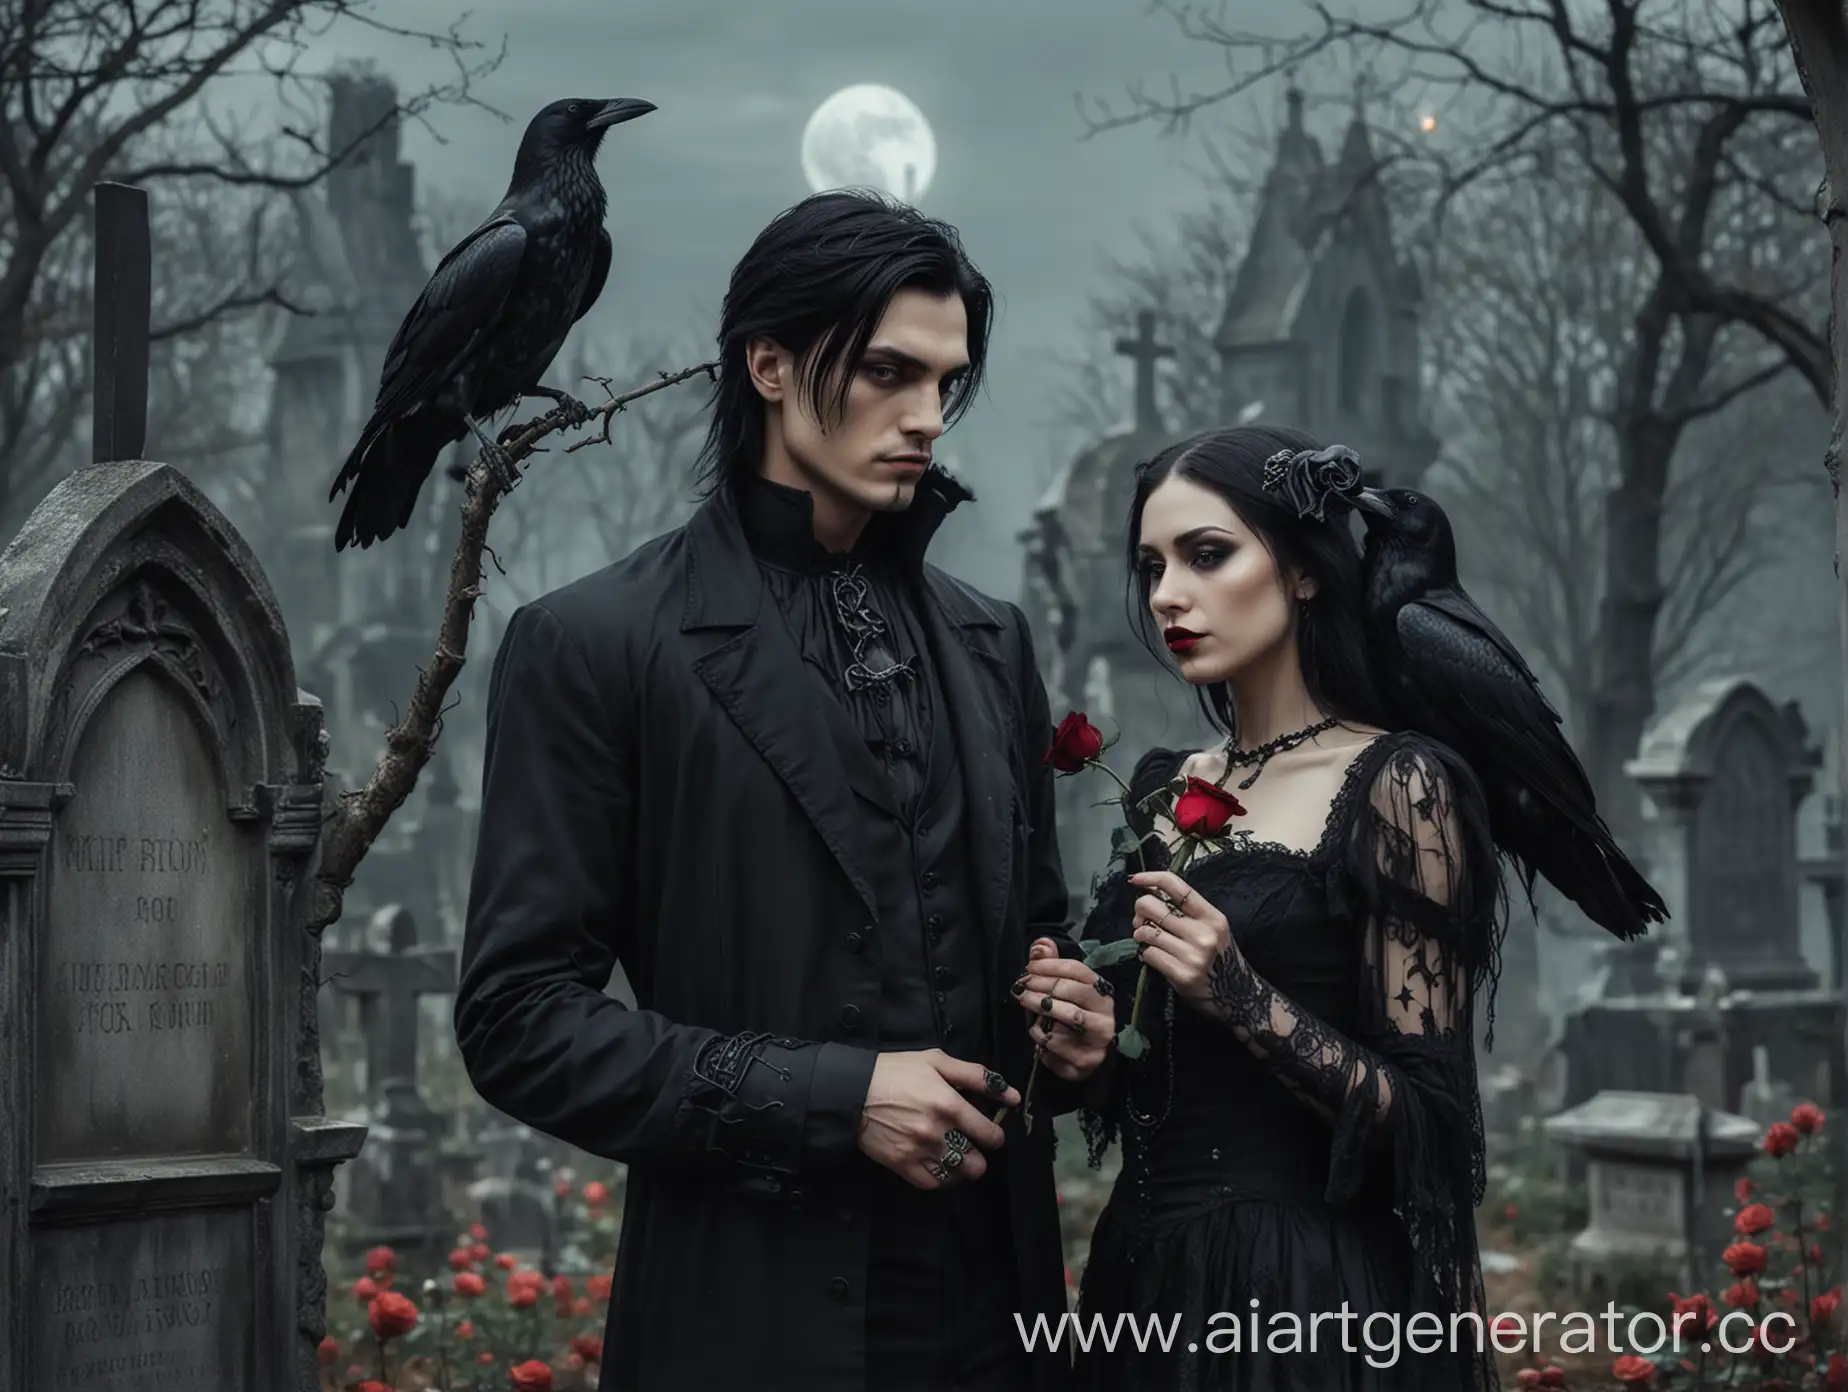 мужчина с черными волосами  держит розу в руке рядом женщина готика  .кладбище вороны луна. готика
